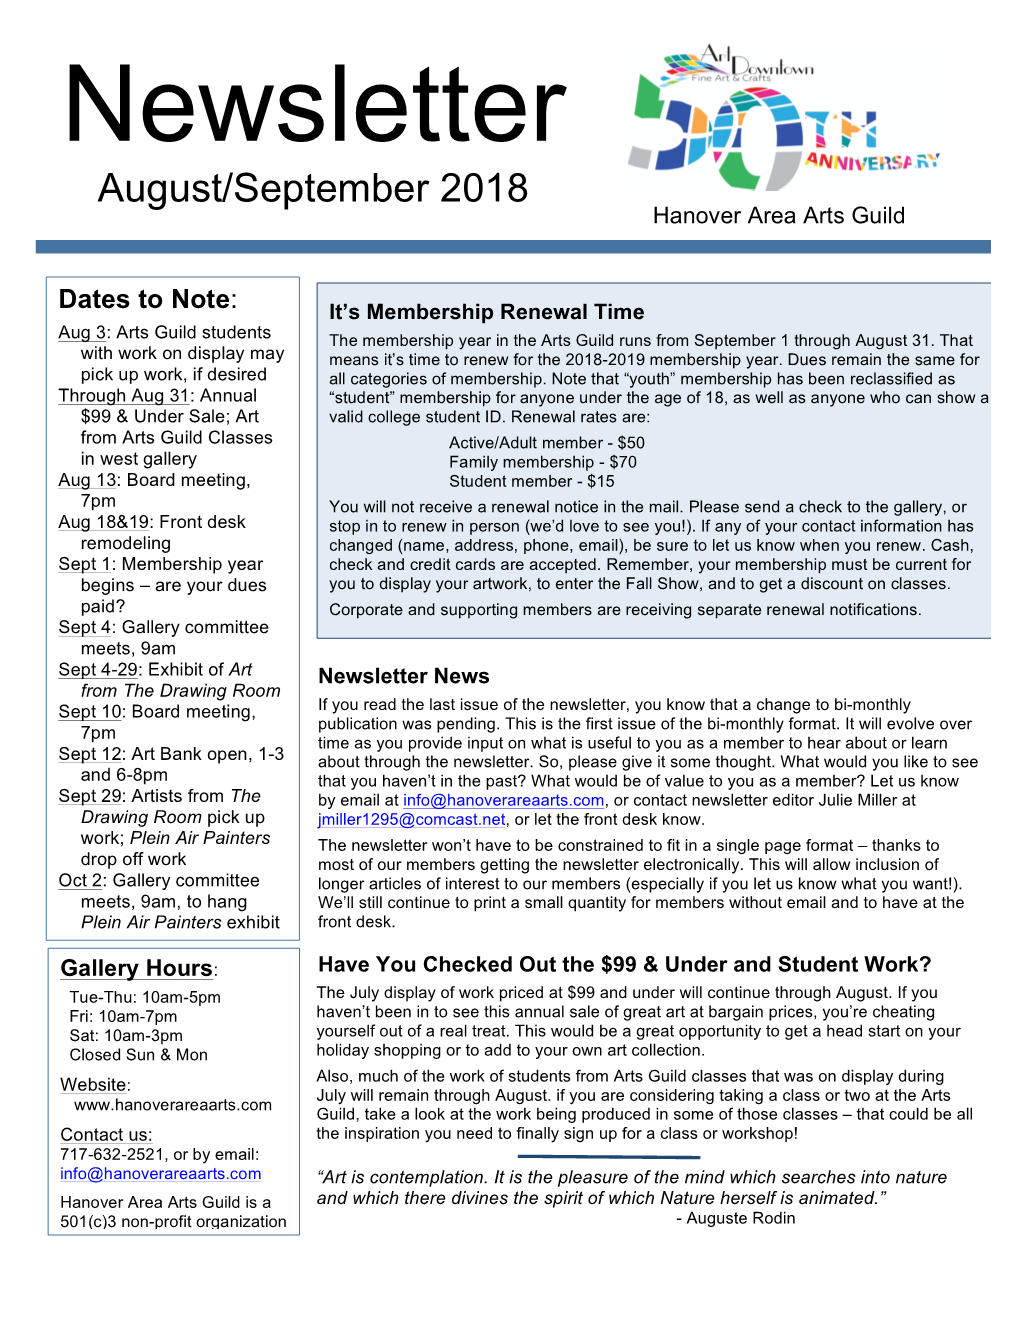 Newsletter August/September 2018 Hanover Area Arts Guild